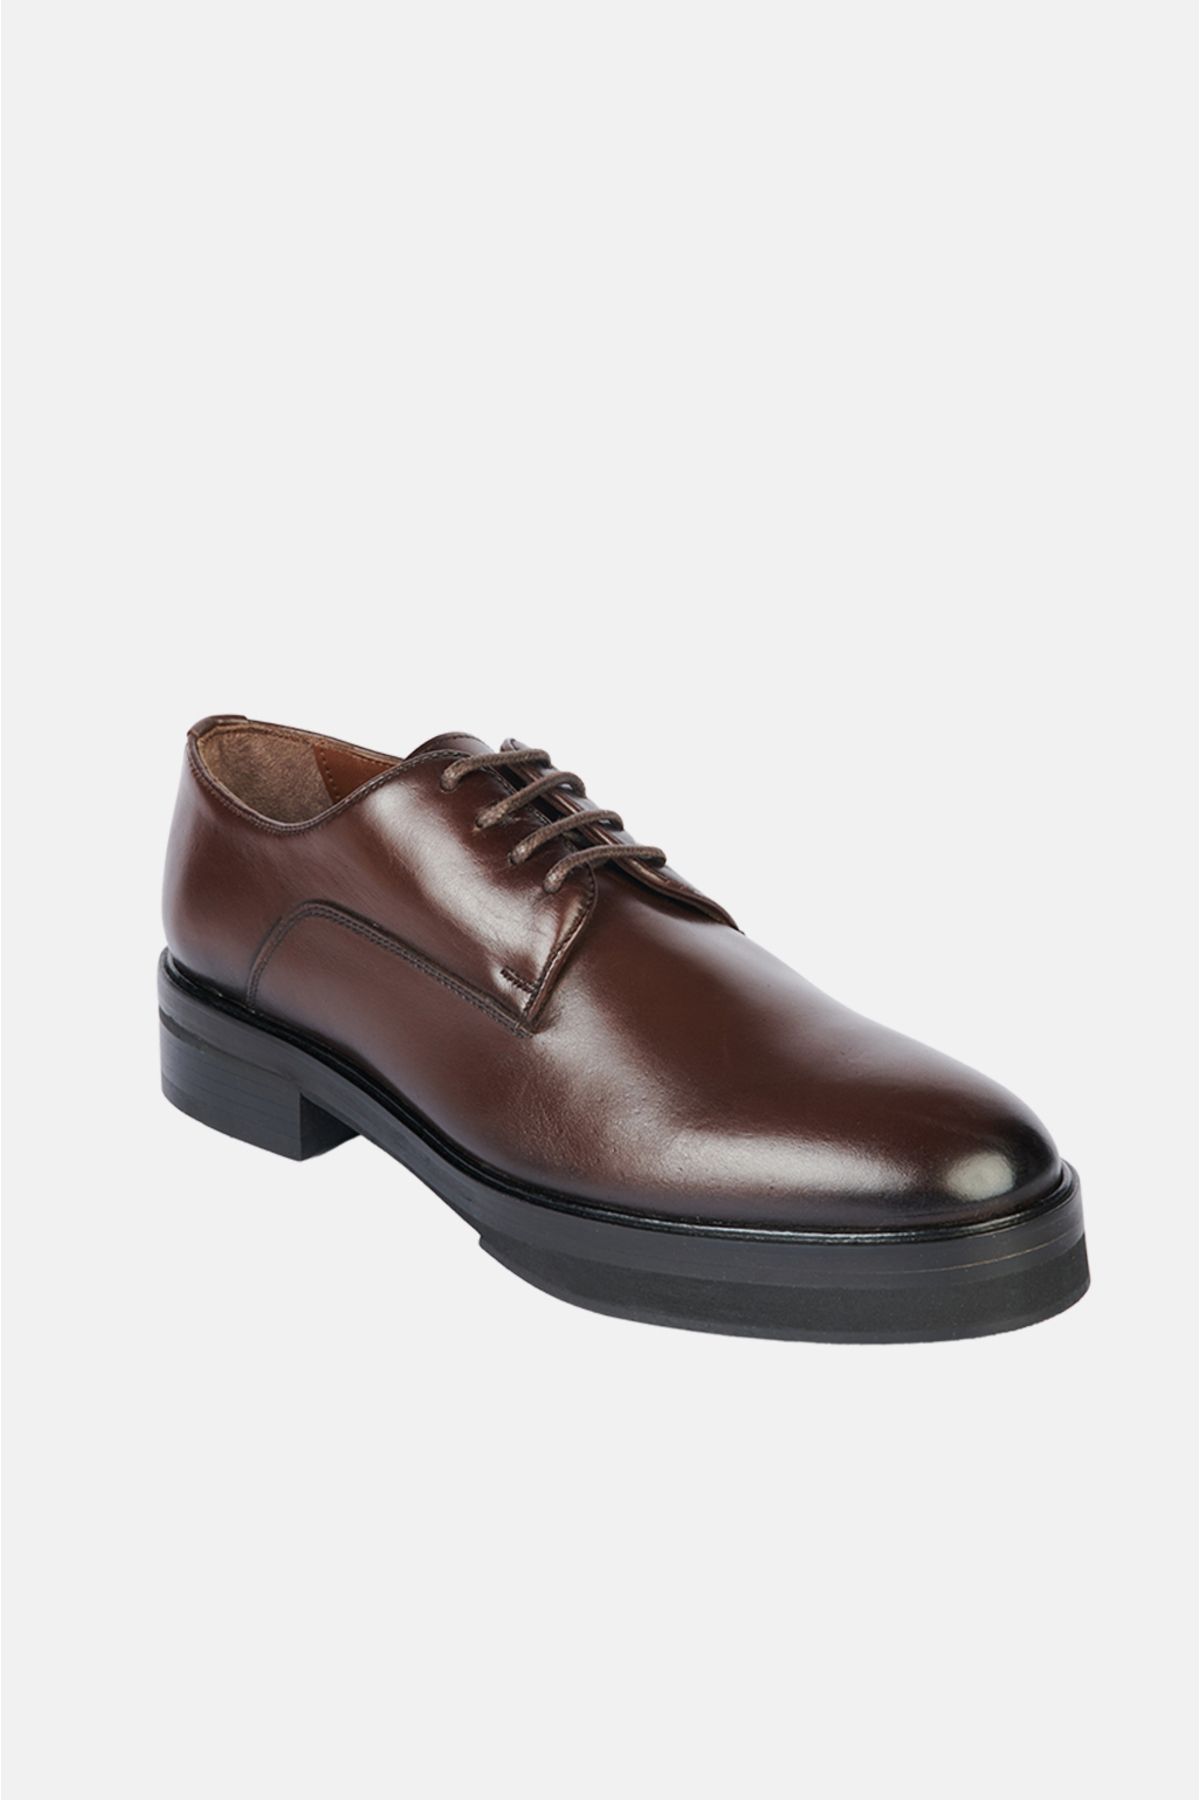 Avva Erkek Kahverengi %100 Deri Bağcıklı Kösele Klasik Ayakkabı A32y8027